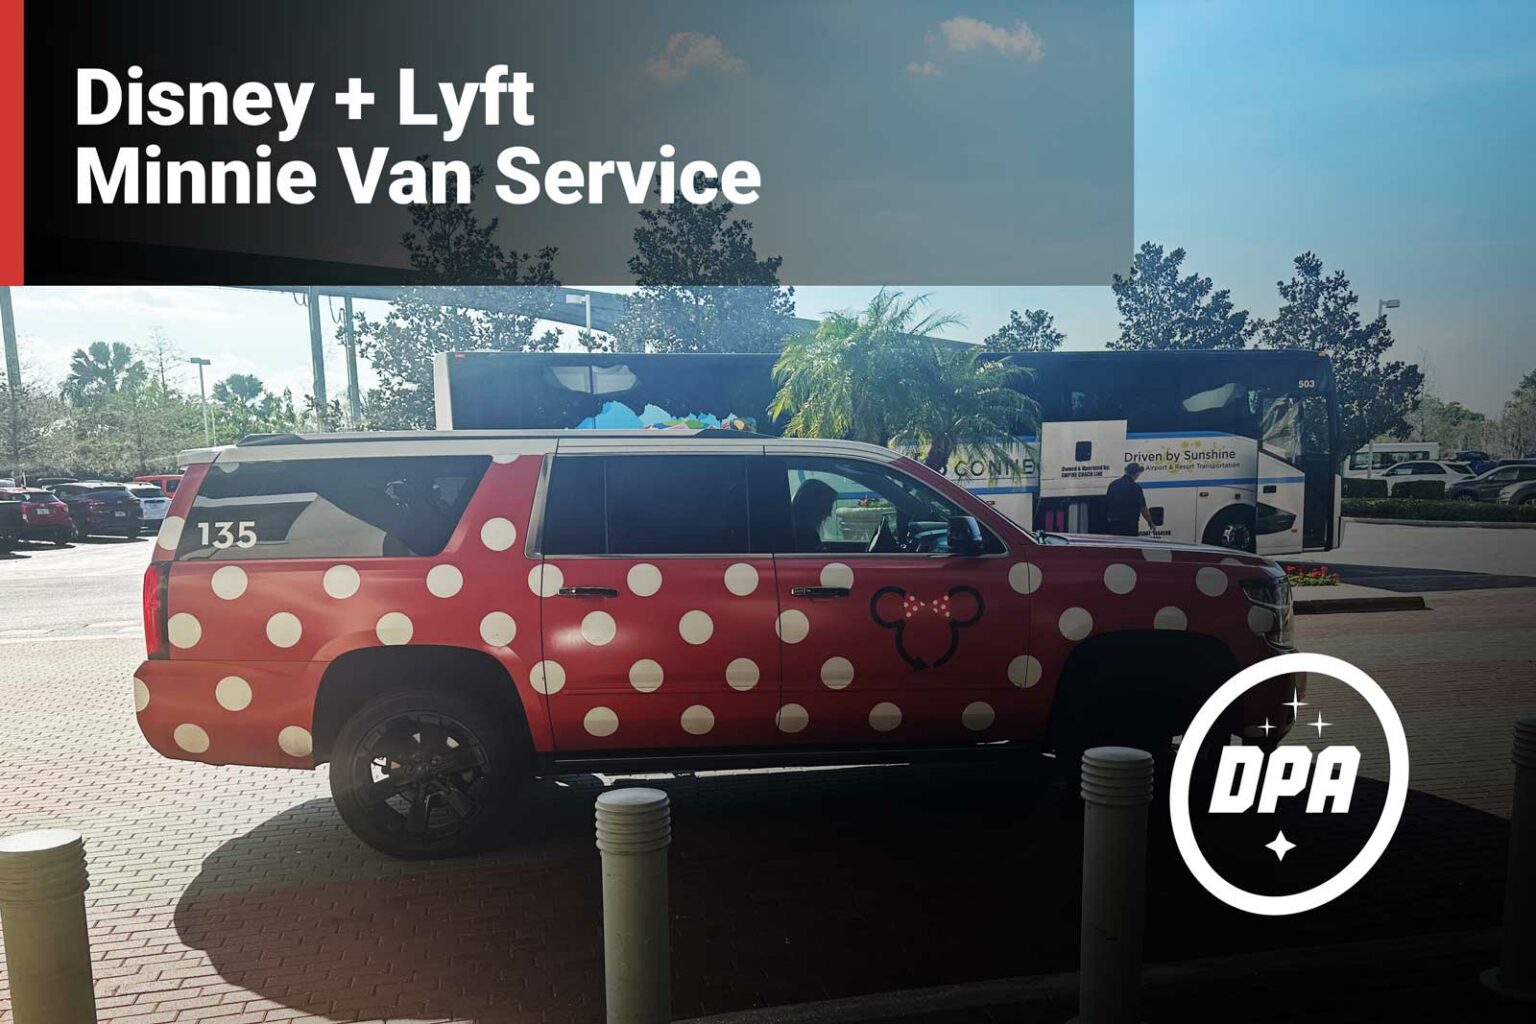 Disney + Lyft Minnie Van Service